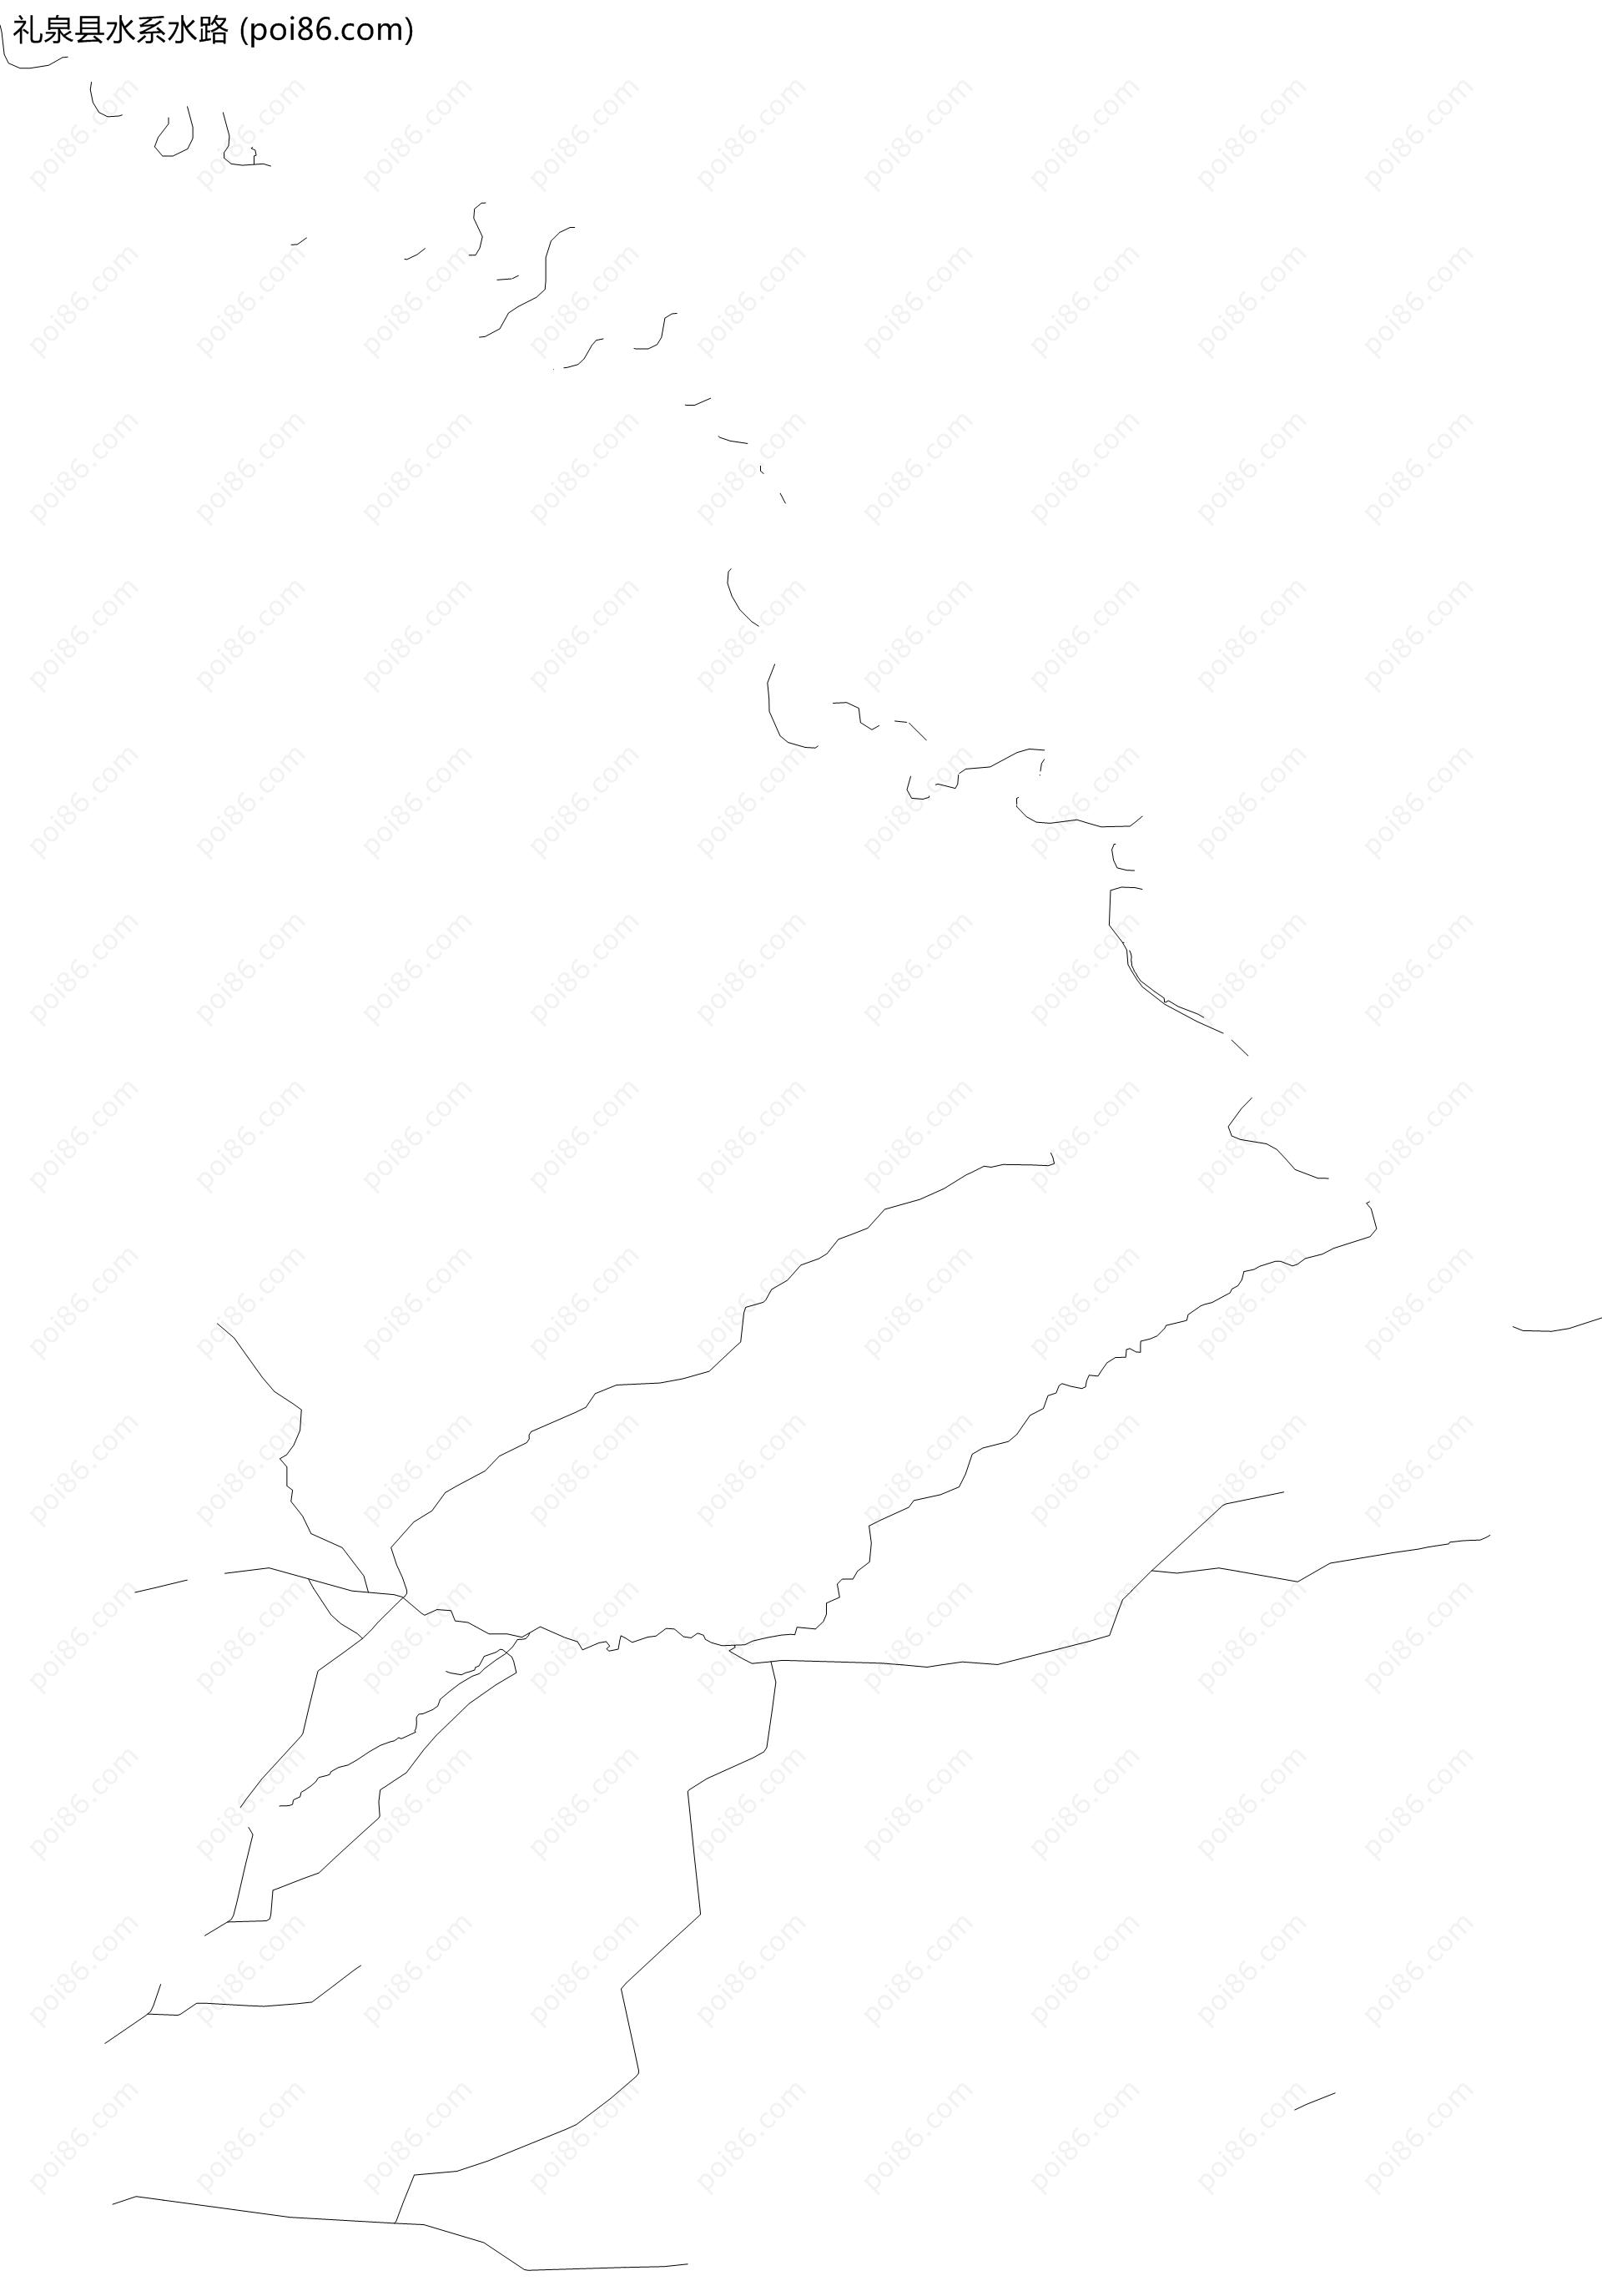 礼泉县水系水路地图